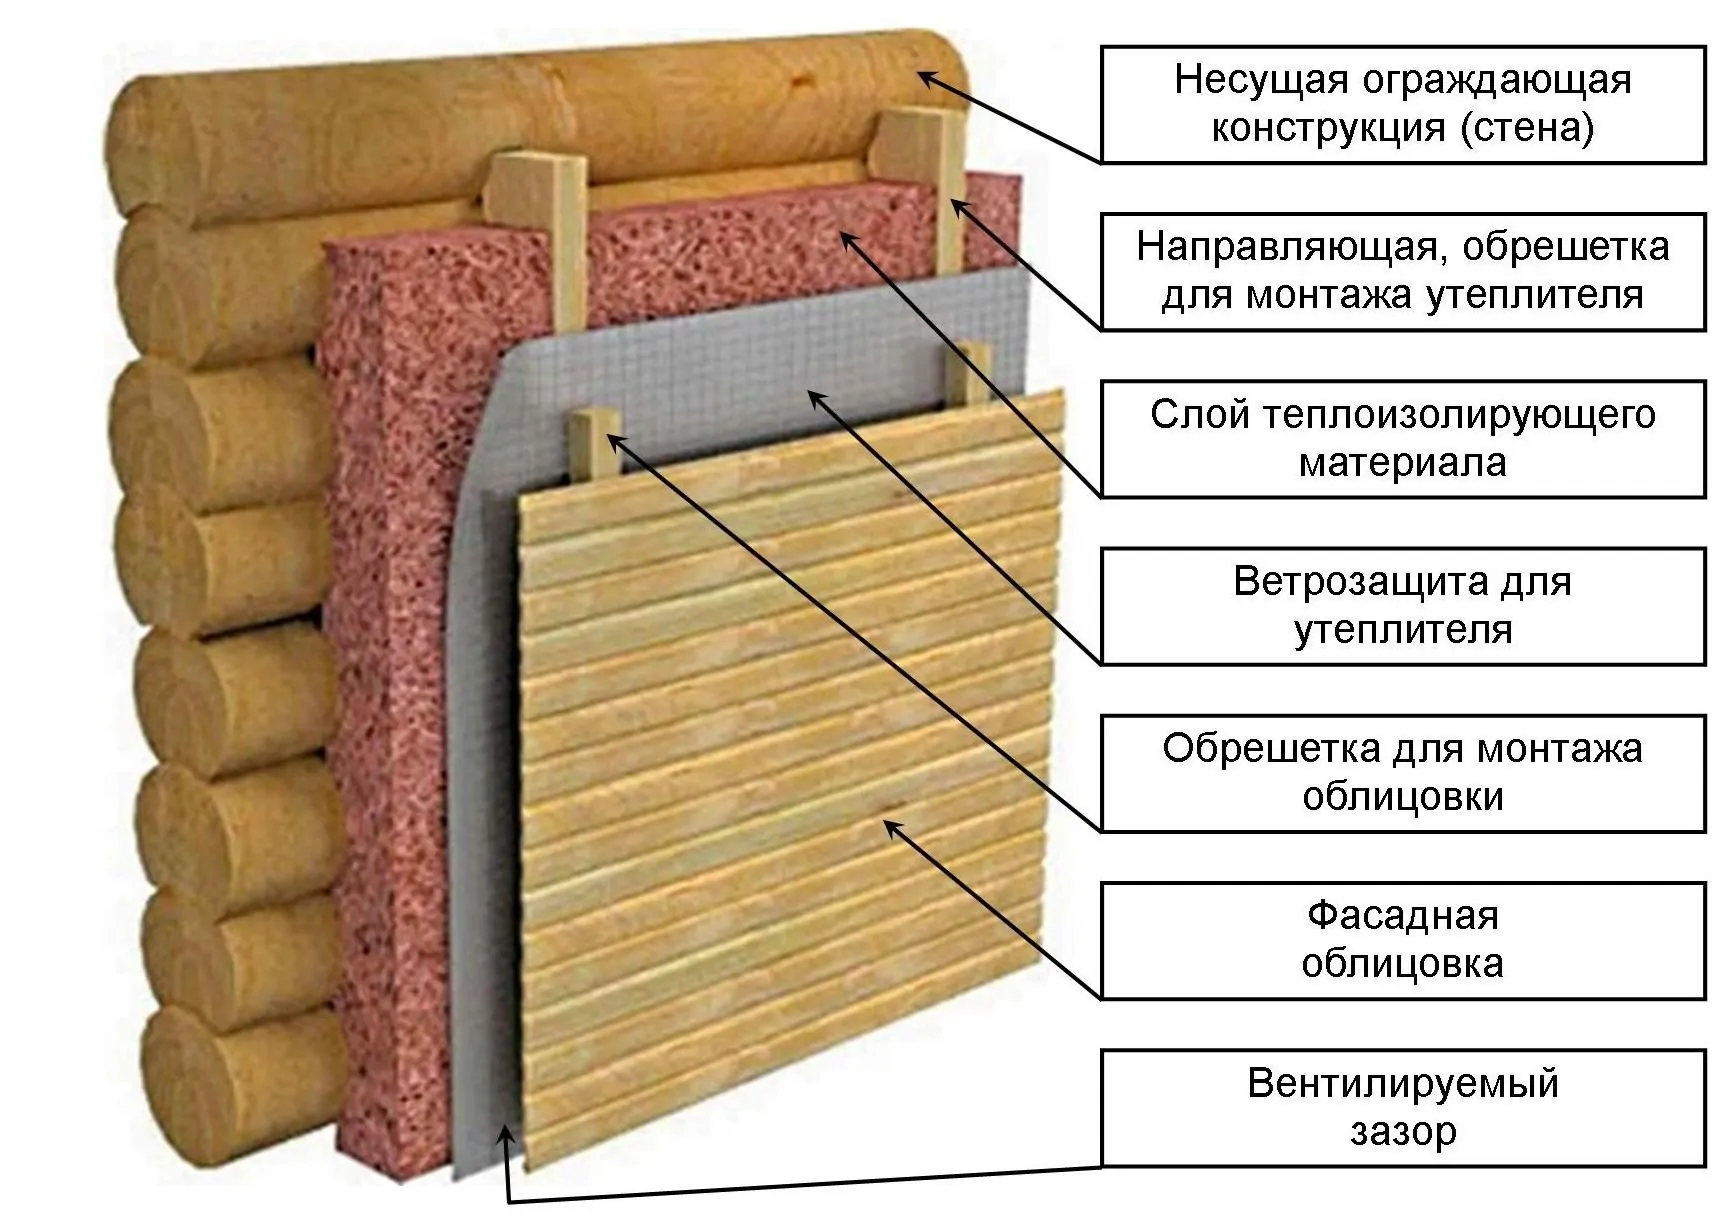 Утепление пола в деревянном доме: виды утеплителей, их особенности,эксплуатационные характеристики, технология утепления